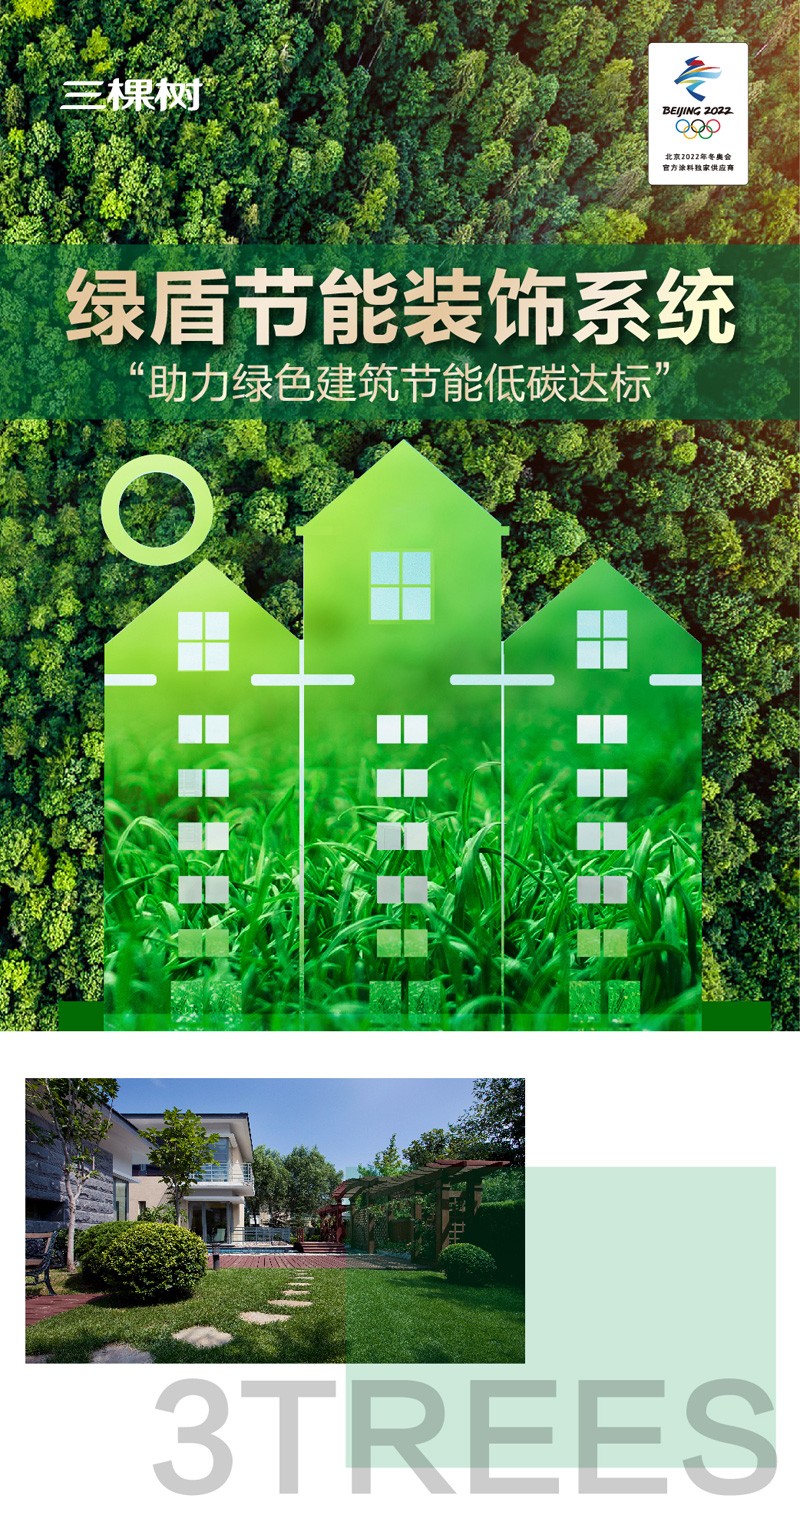 节能：三棵树率先推出绿盾节能装饰系统，内外组合保温装饰一体化助力绿色建筑节能低碳达标